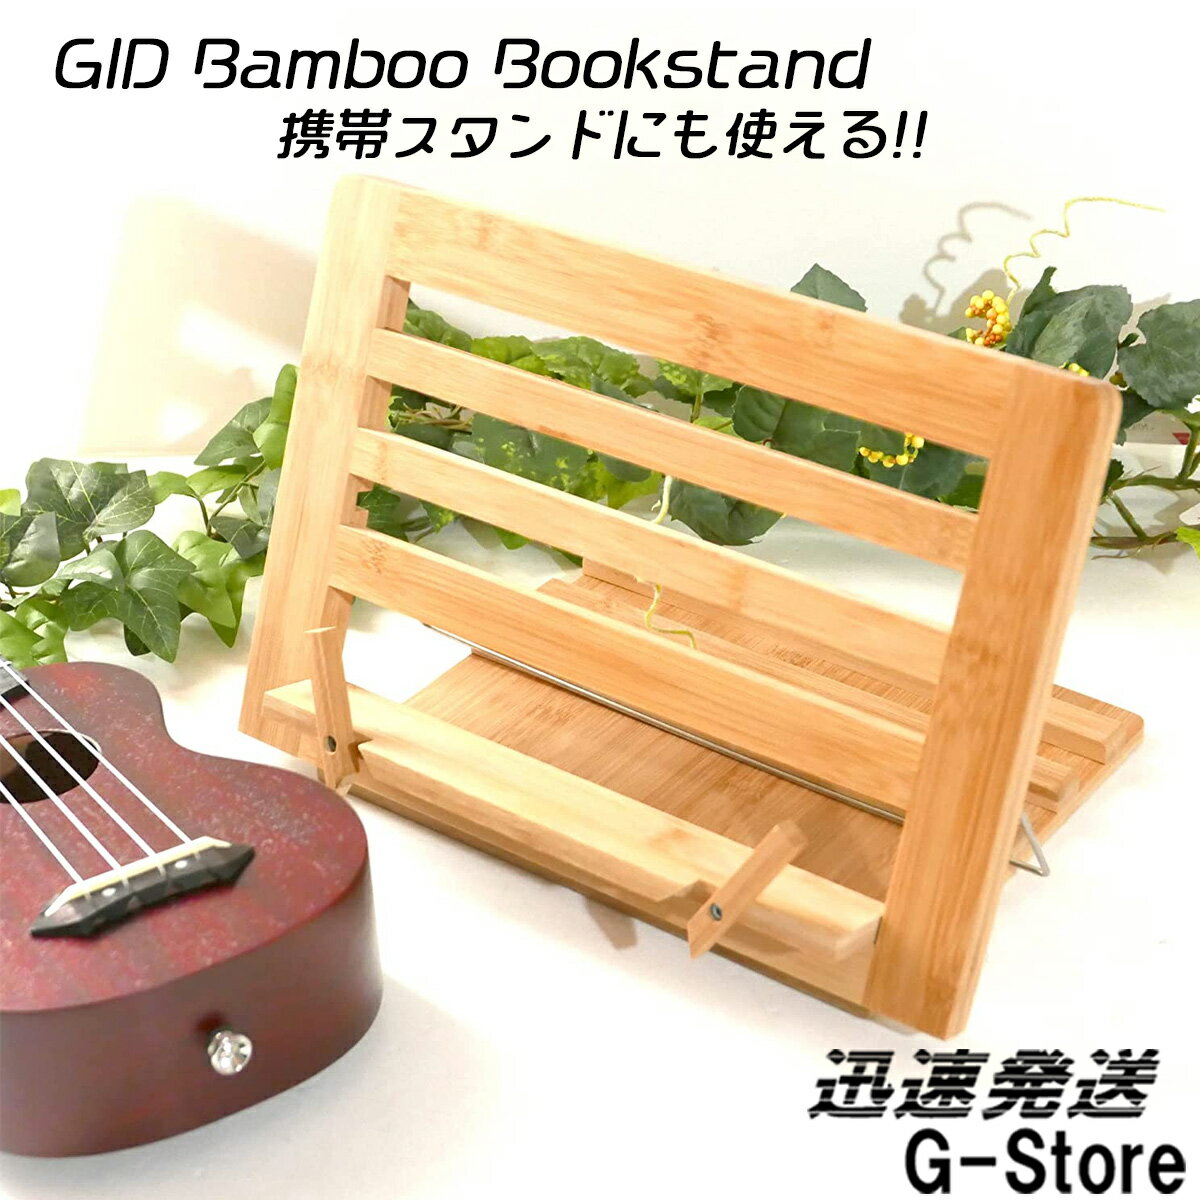 木製 ブックスタンド 卓上 メニュースタンド 譜面台 Lサイズ GBB-30F Bamboo Bookstand GID ジッド